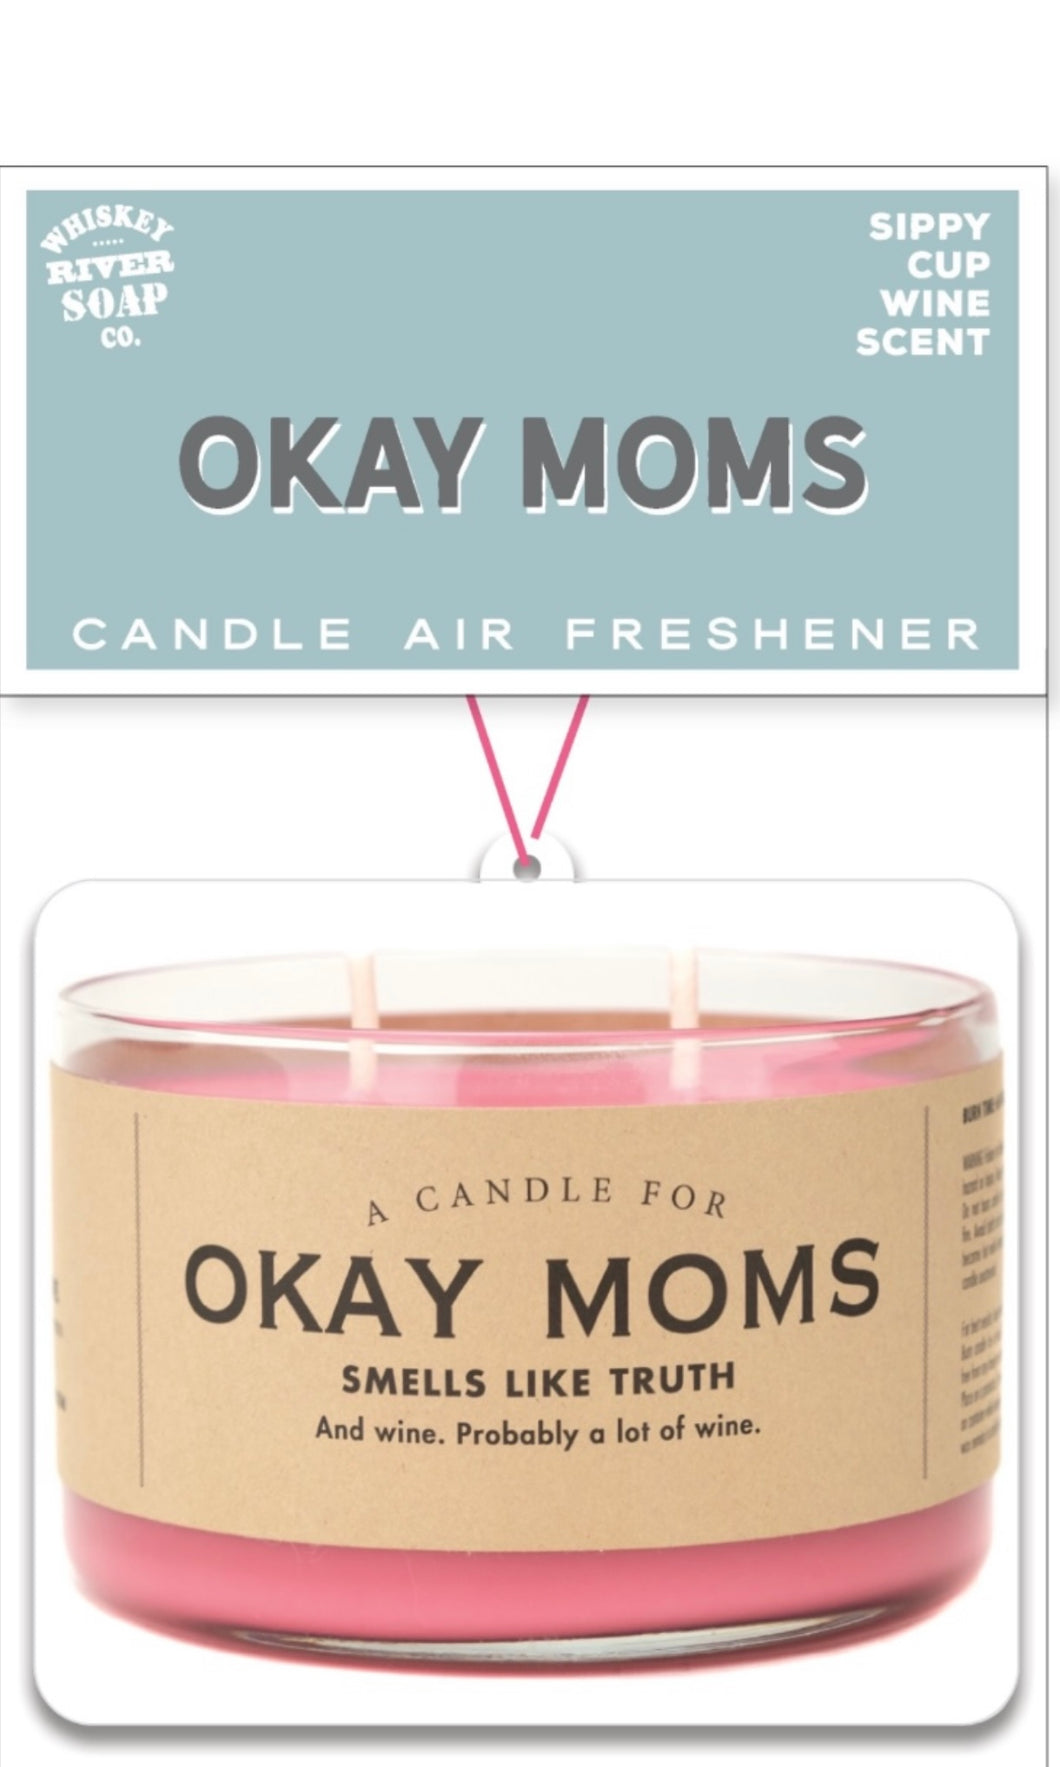 Whisky - River Air Freshener for Okay Moms